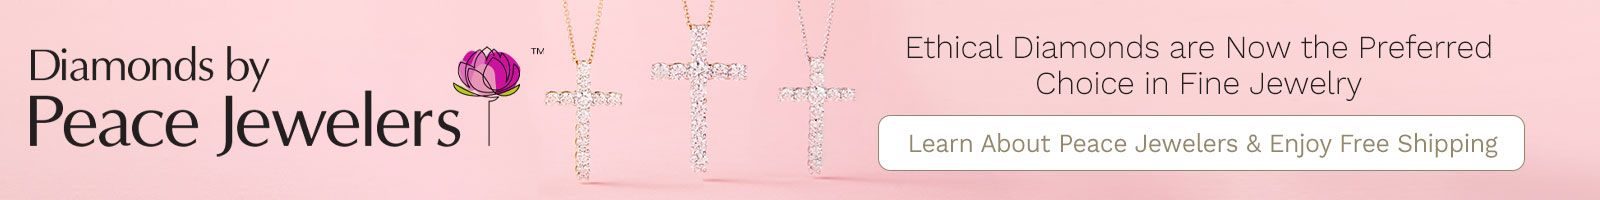 Peace Jewelers |  210-219 Peace Jewelers 14K Gold Choice of Carat Weight Cultured Diamond Cross Pendant